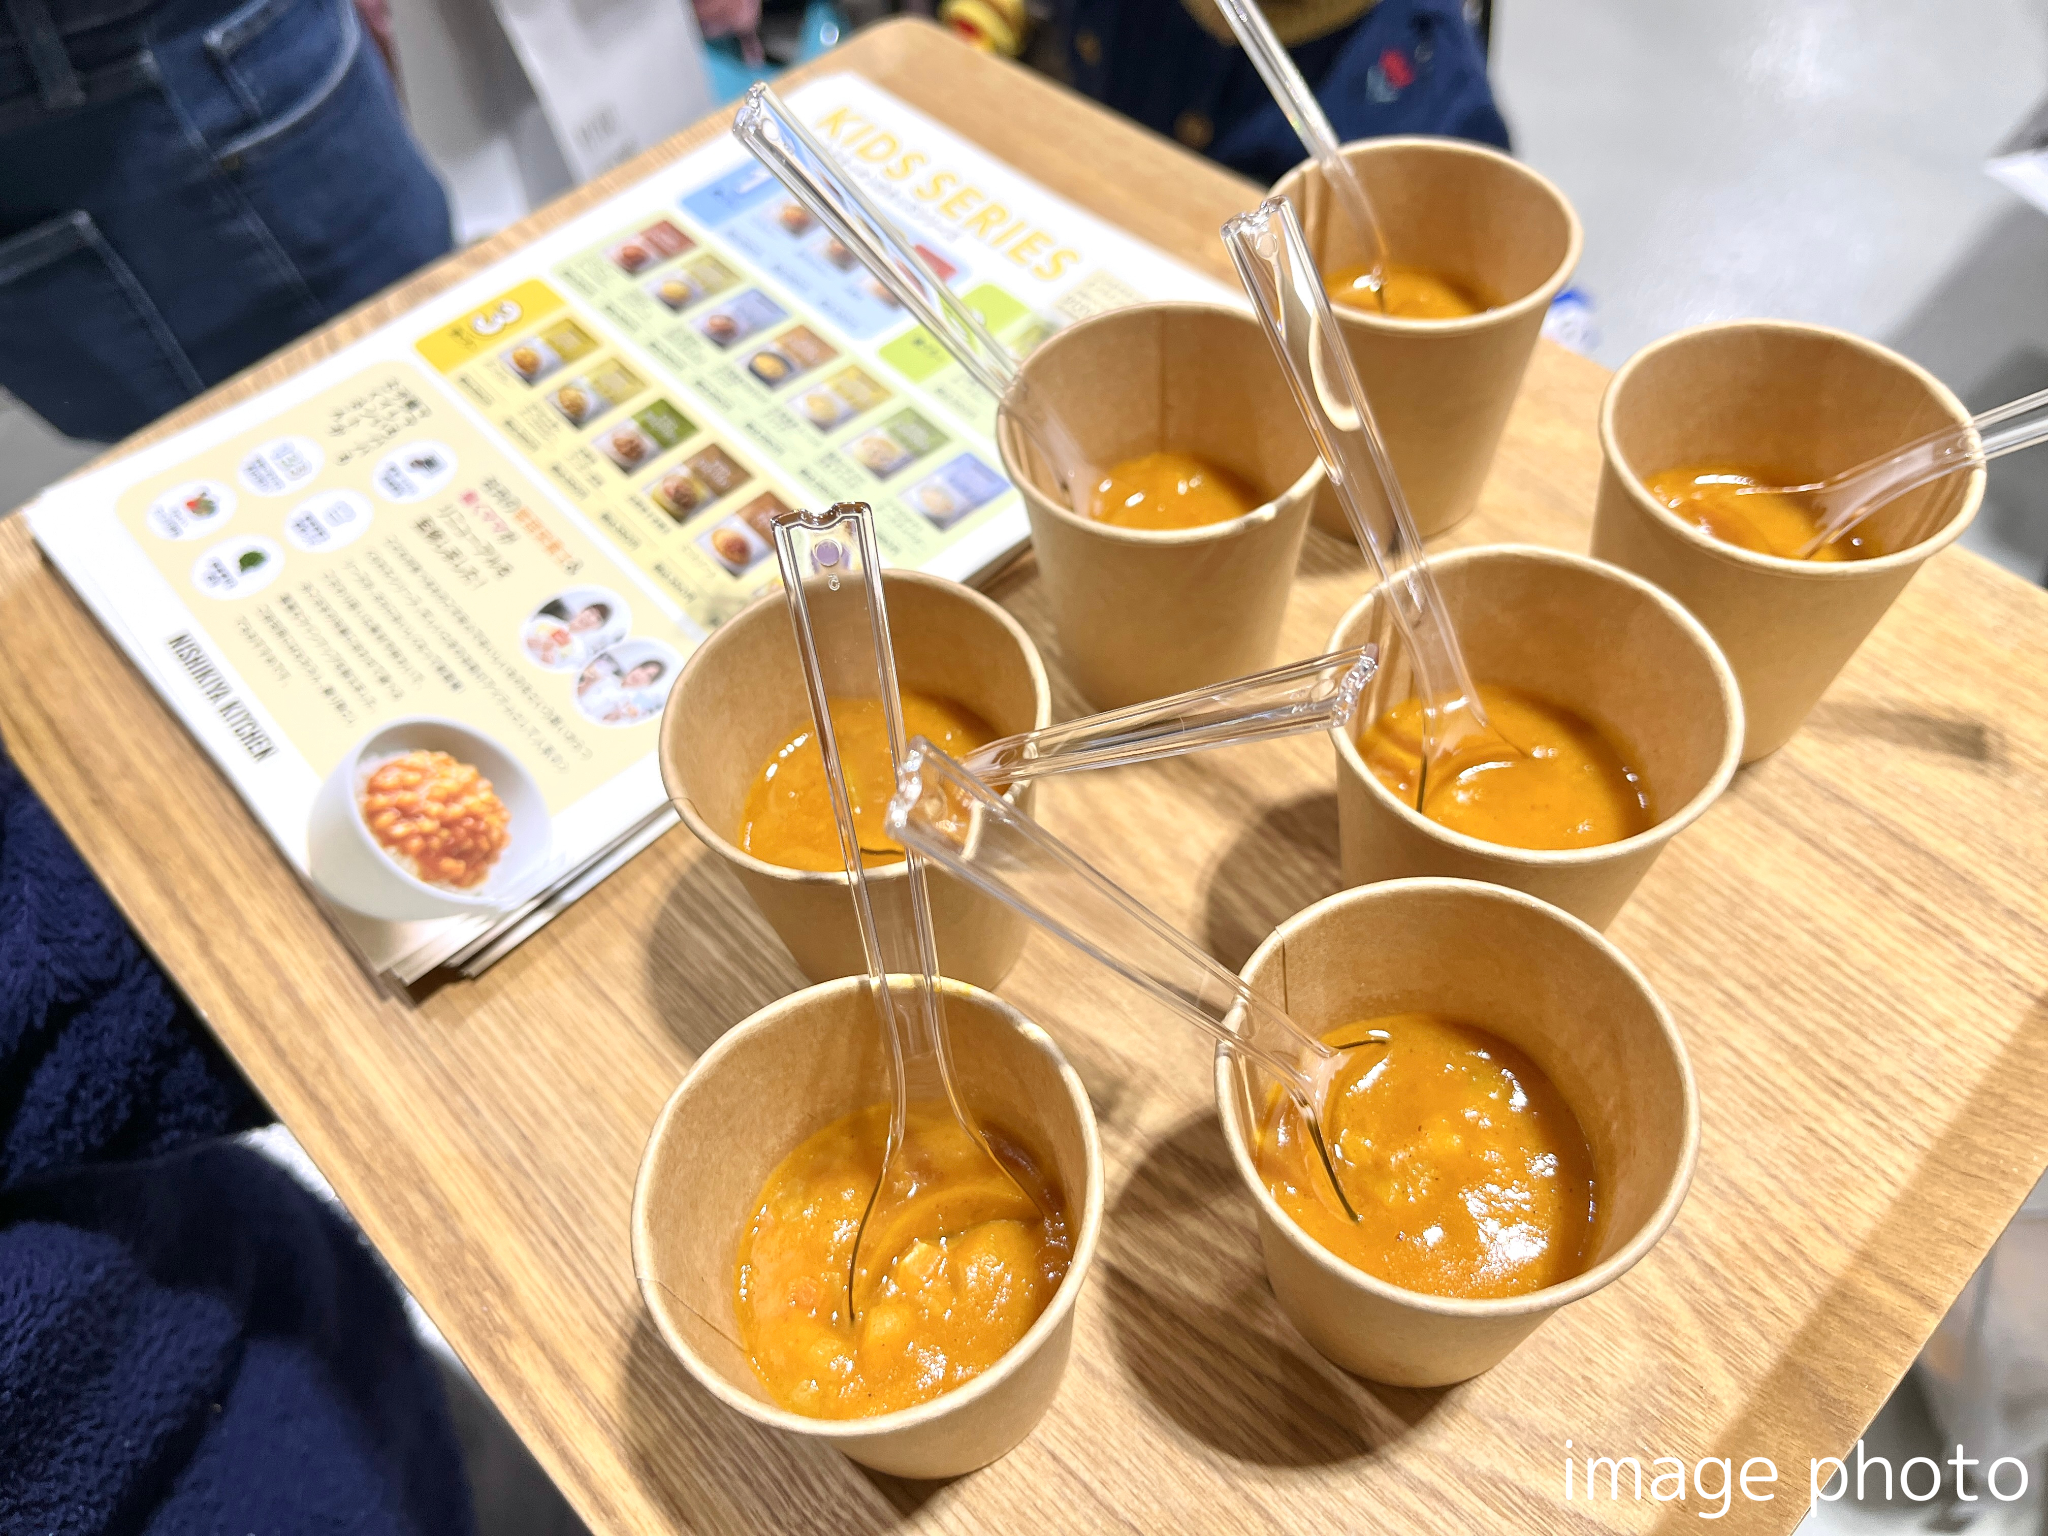 レトルトカレーを中心に約120種類のレトルト食品を販売するNISHIKIYA KITCHENが7月3日より1週間限定で神戸阪...